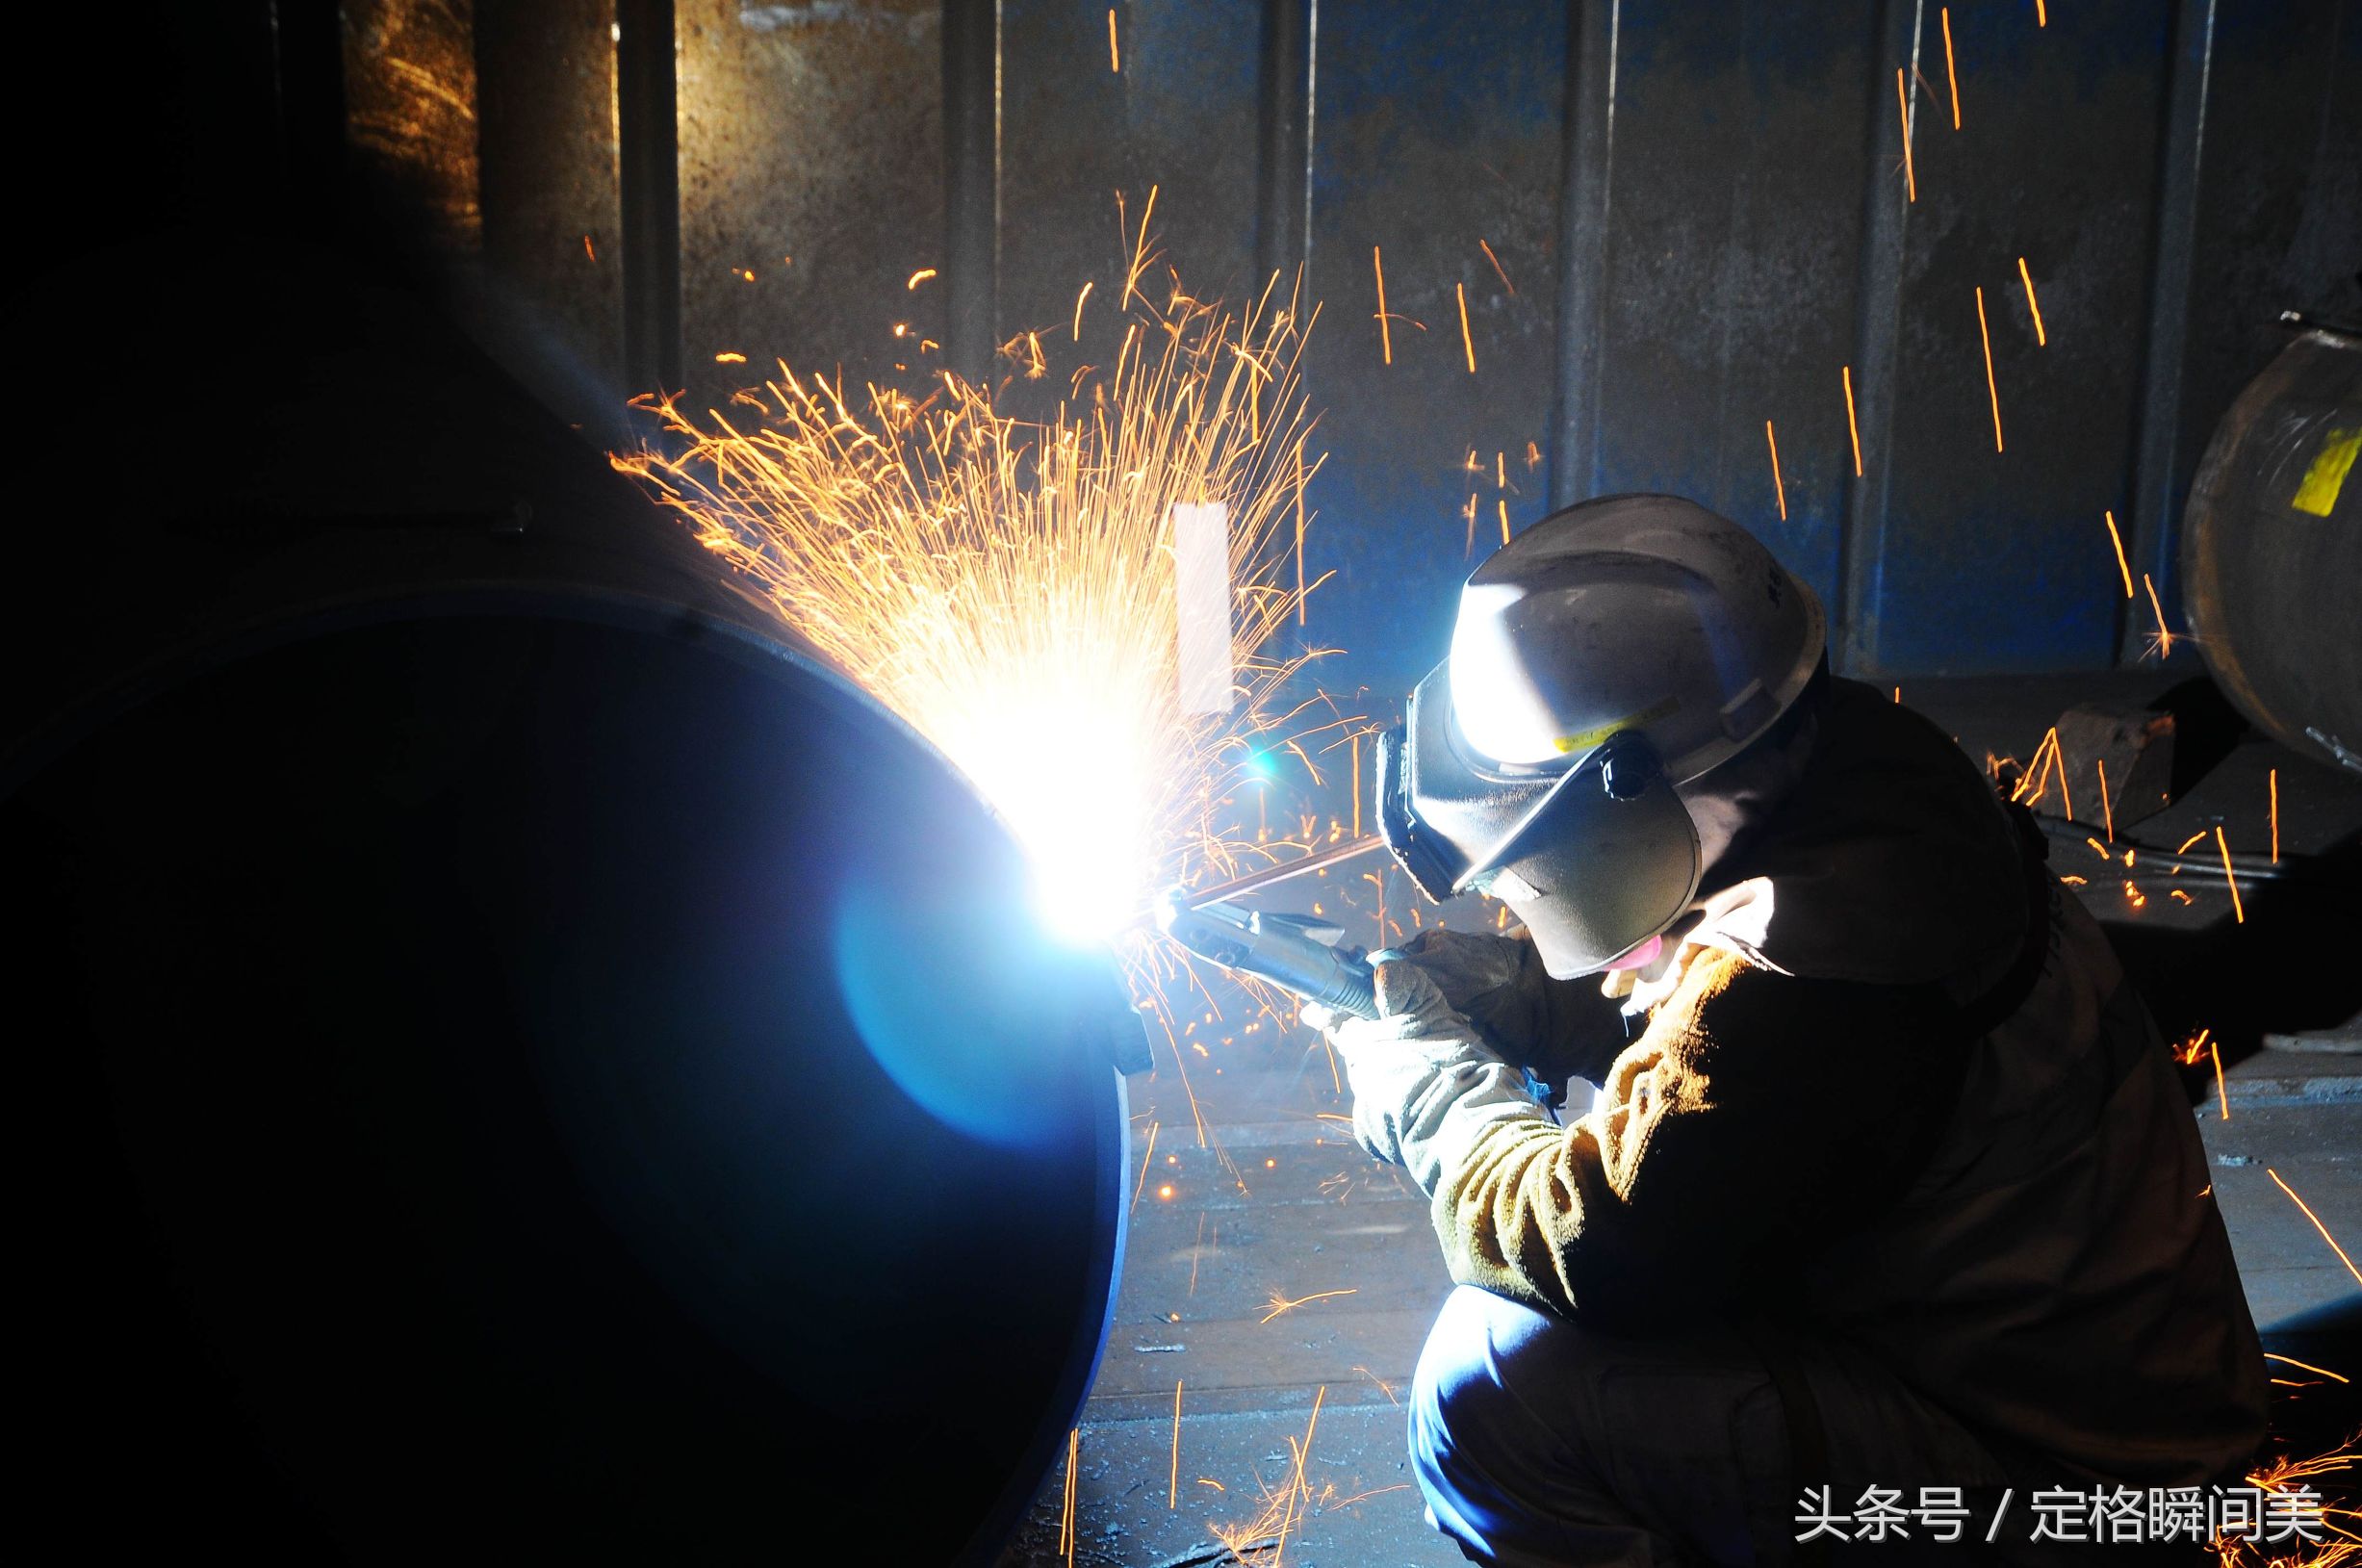 图为:船舶重工企业里,一名电焊工人在焊接作业中.